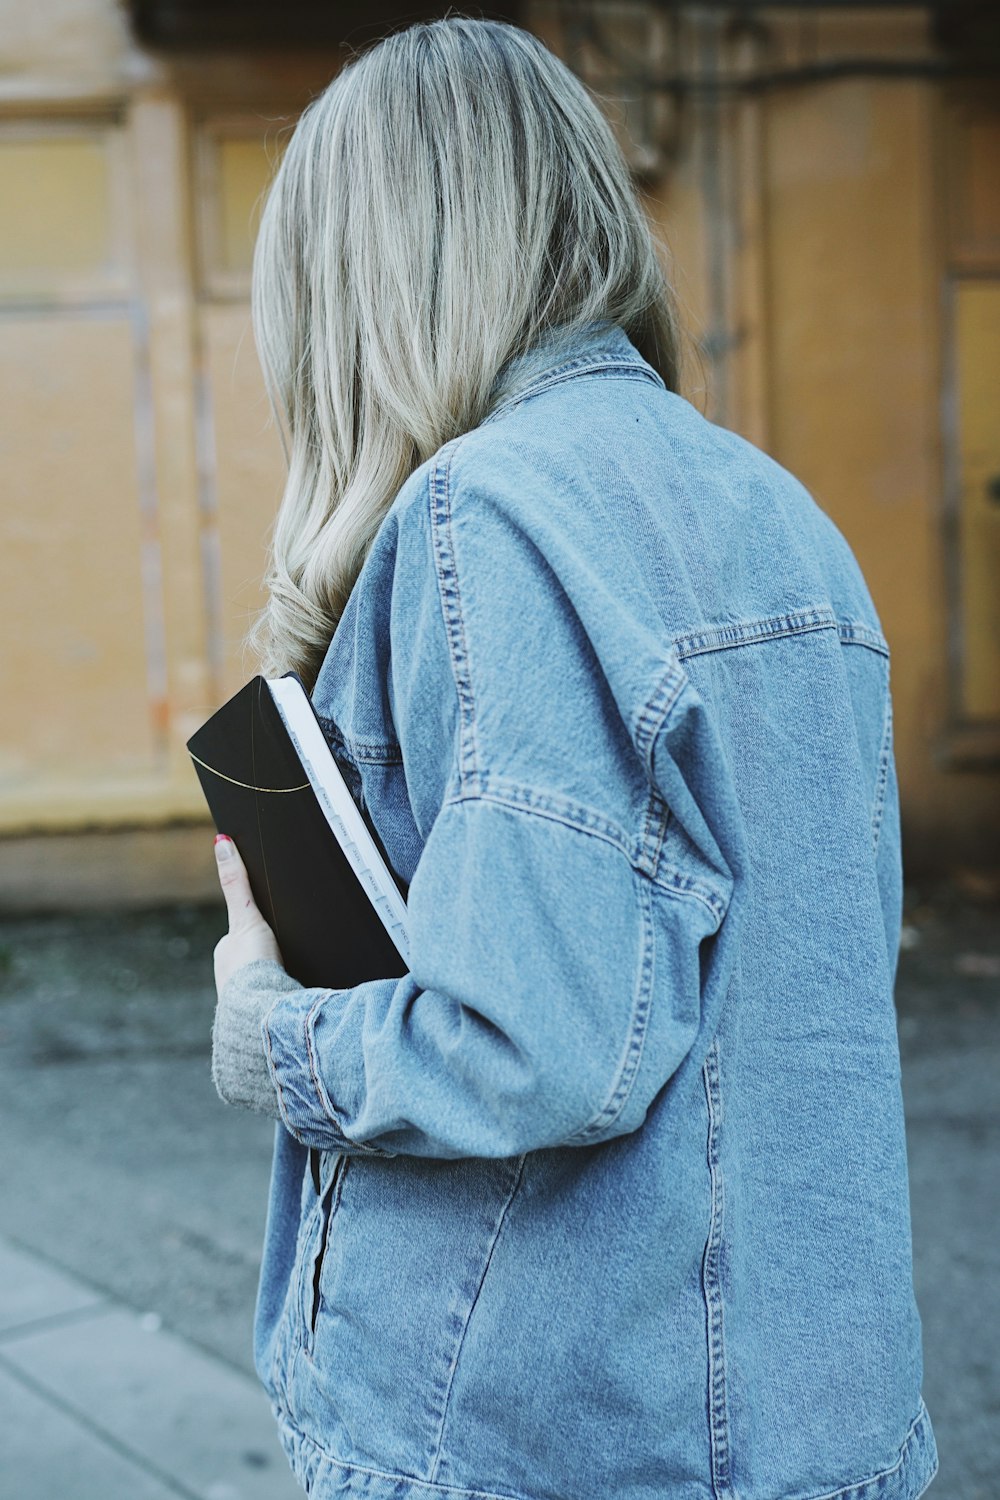 Frau in blauer Jeansjacke mit schwarzem Buch